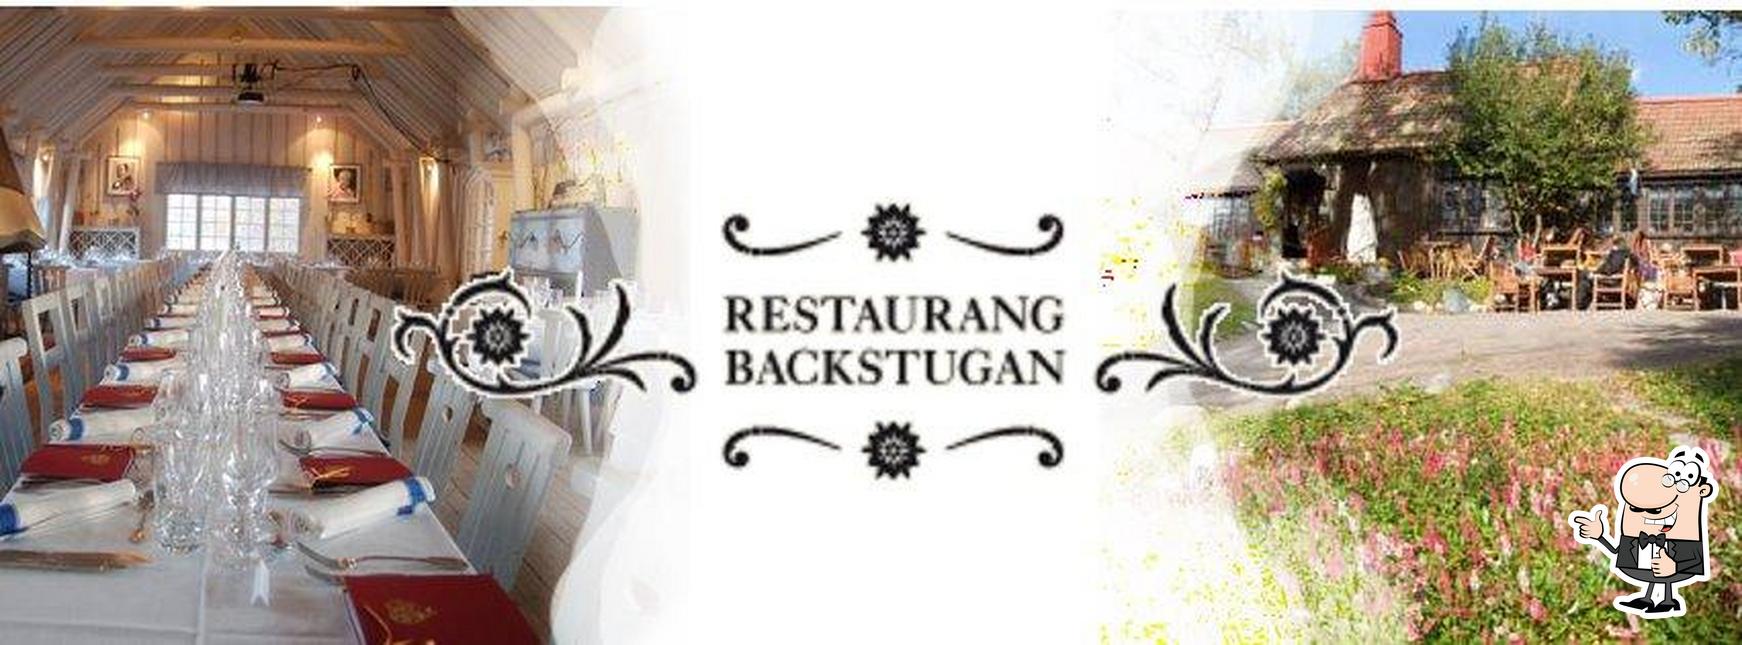 See this image of Restaurang Backstugan